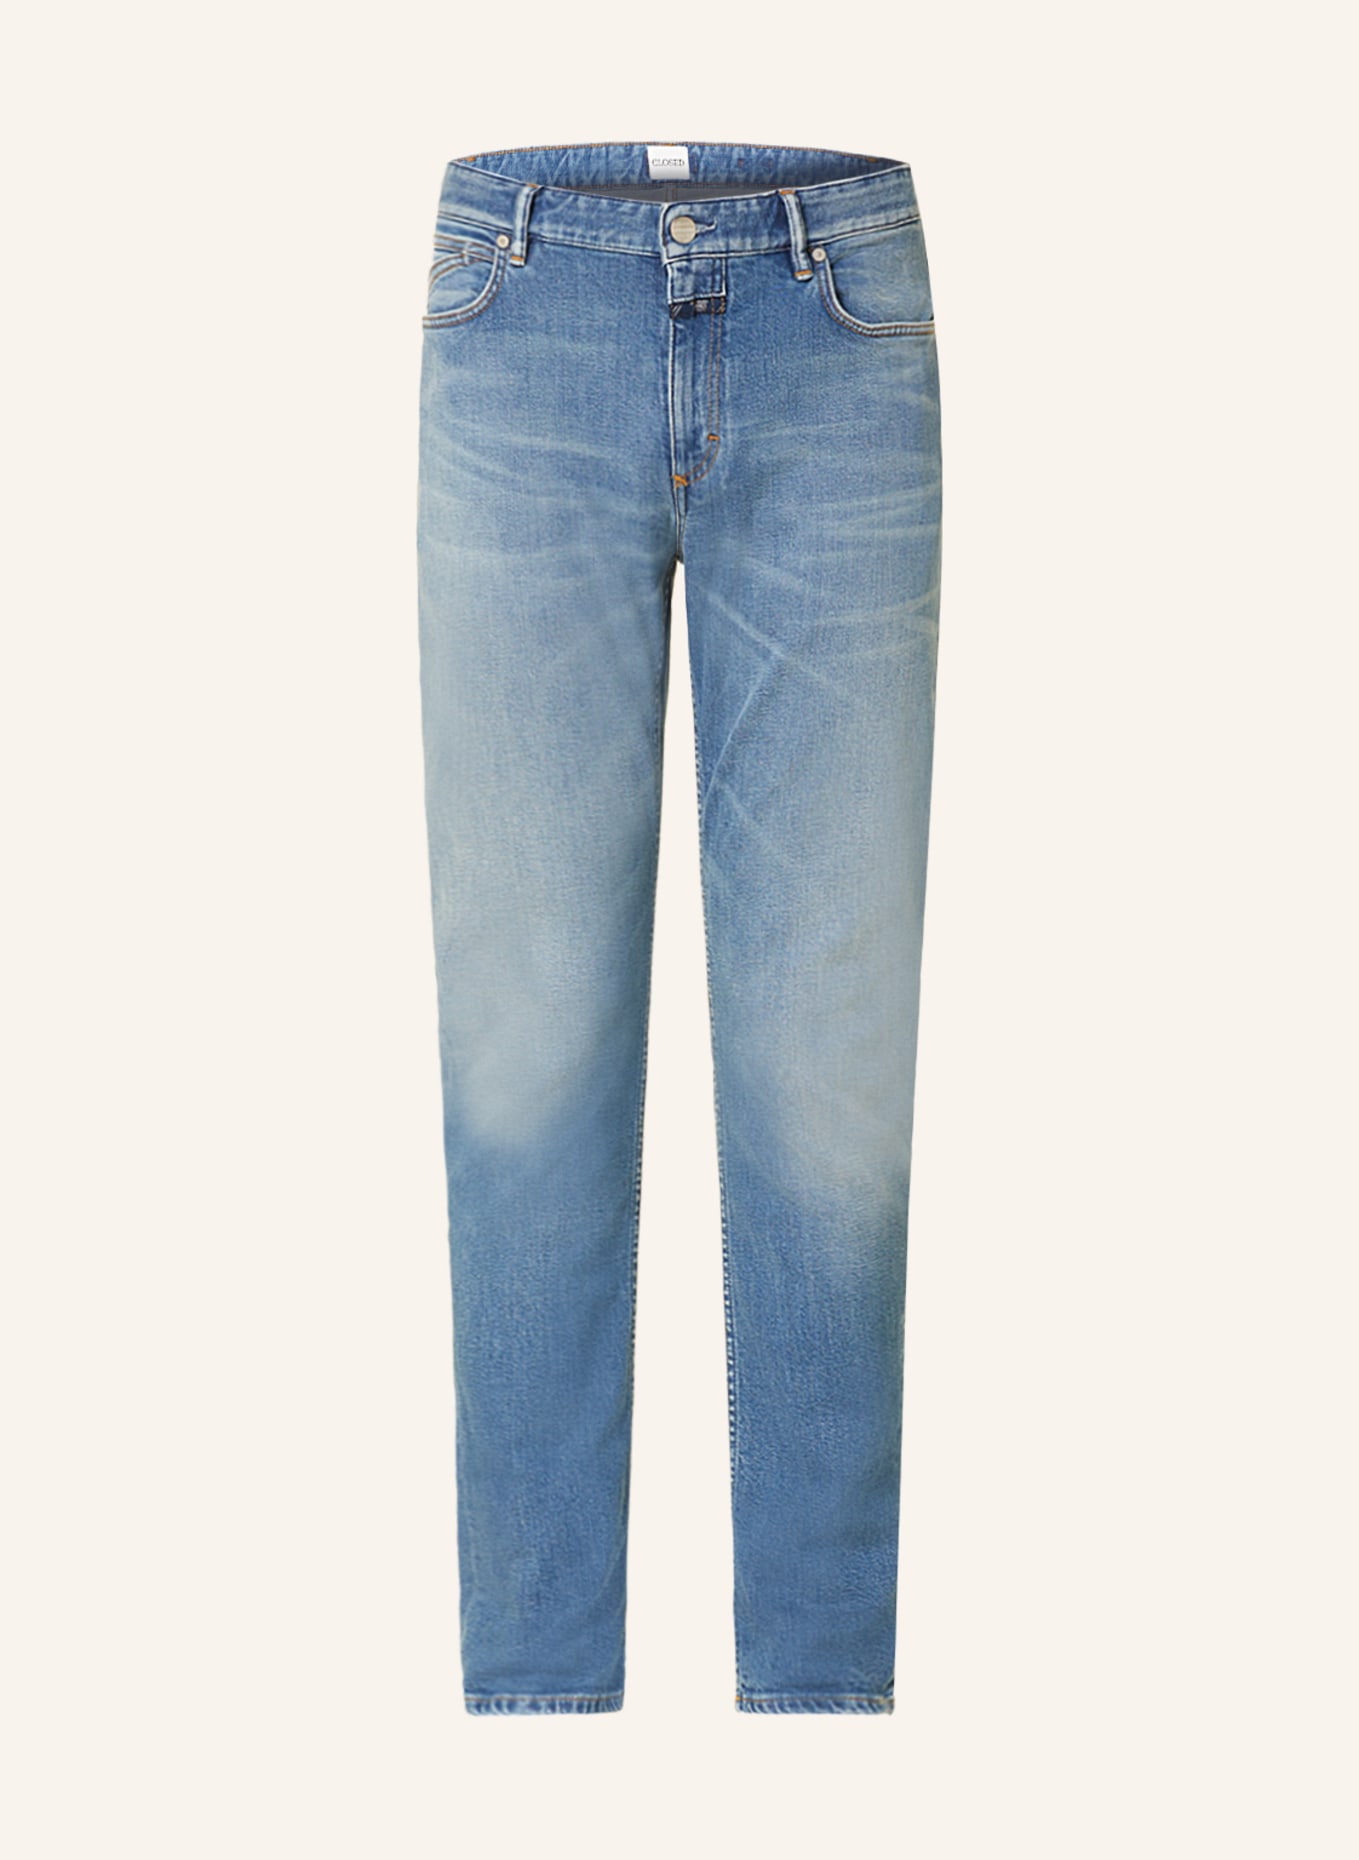 CLOSED Jeans UNITY SLIM FIT, Farbe: MBL MID BLUE (Bild 1)